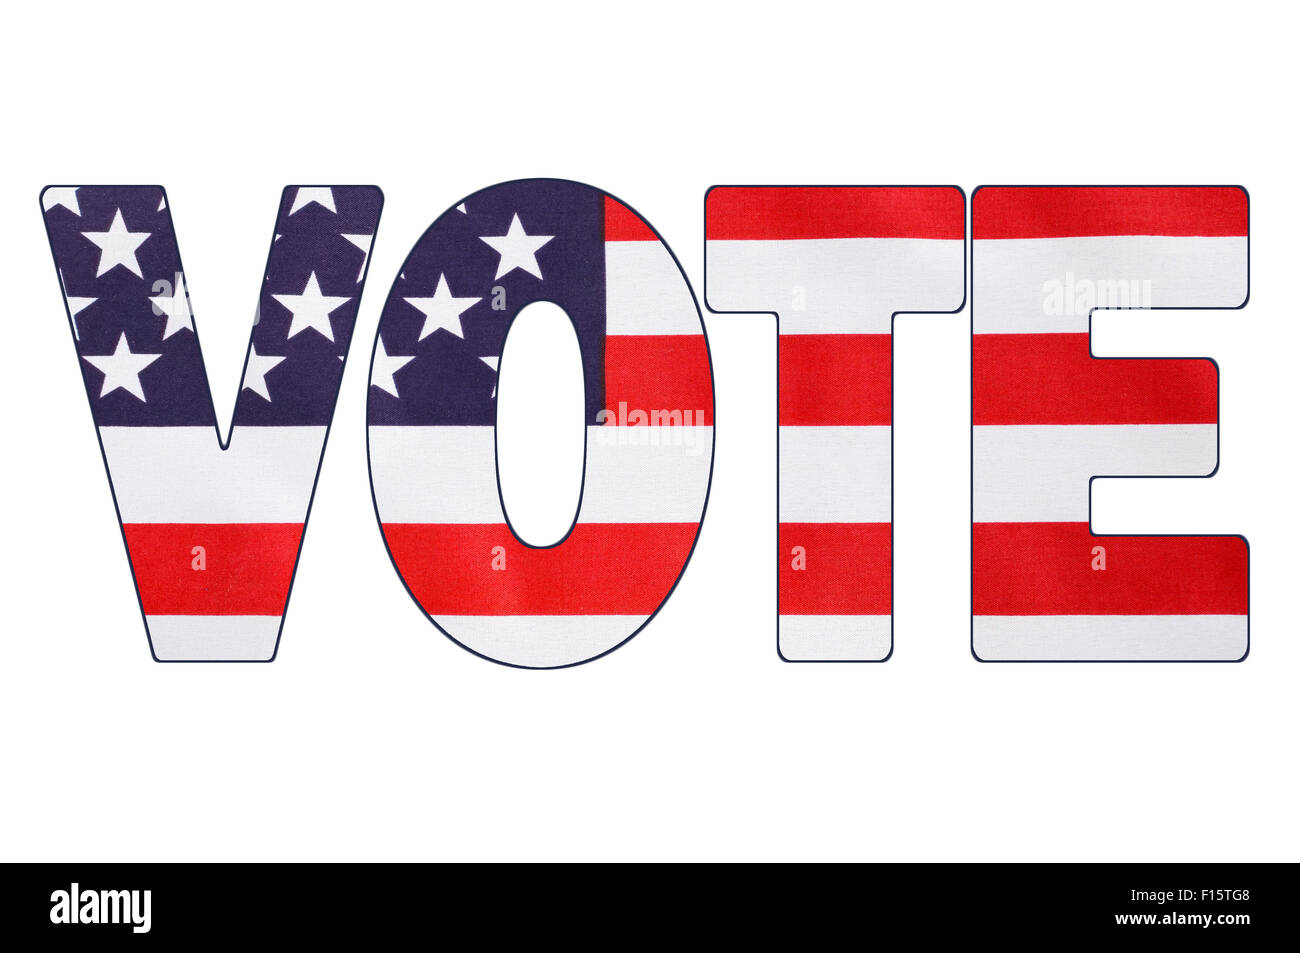 USA 2016 Élection présidentielle avec image de Stars and Stripes en contours de la parole, VOTE. Banque D'Images